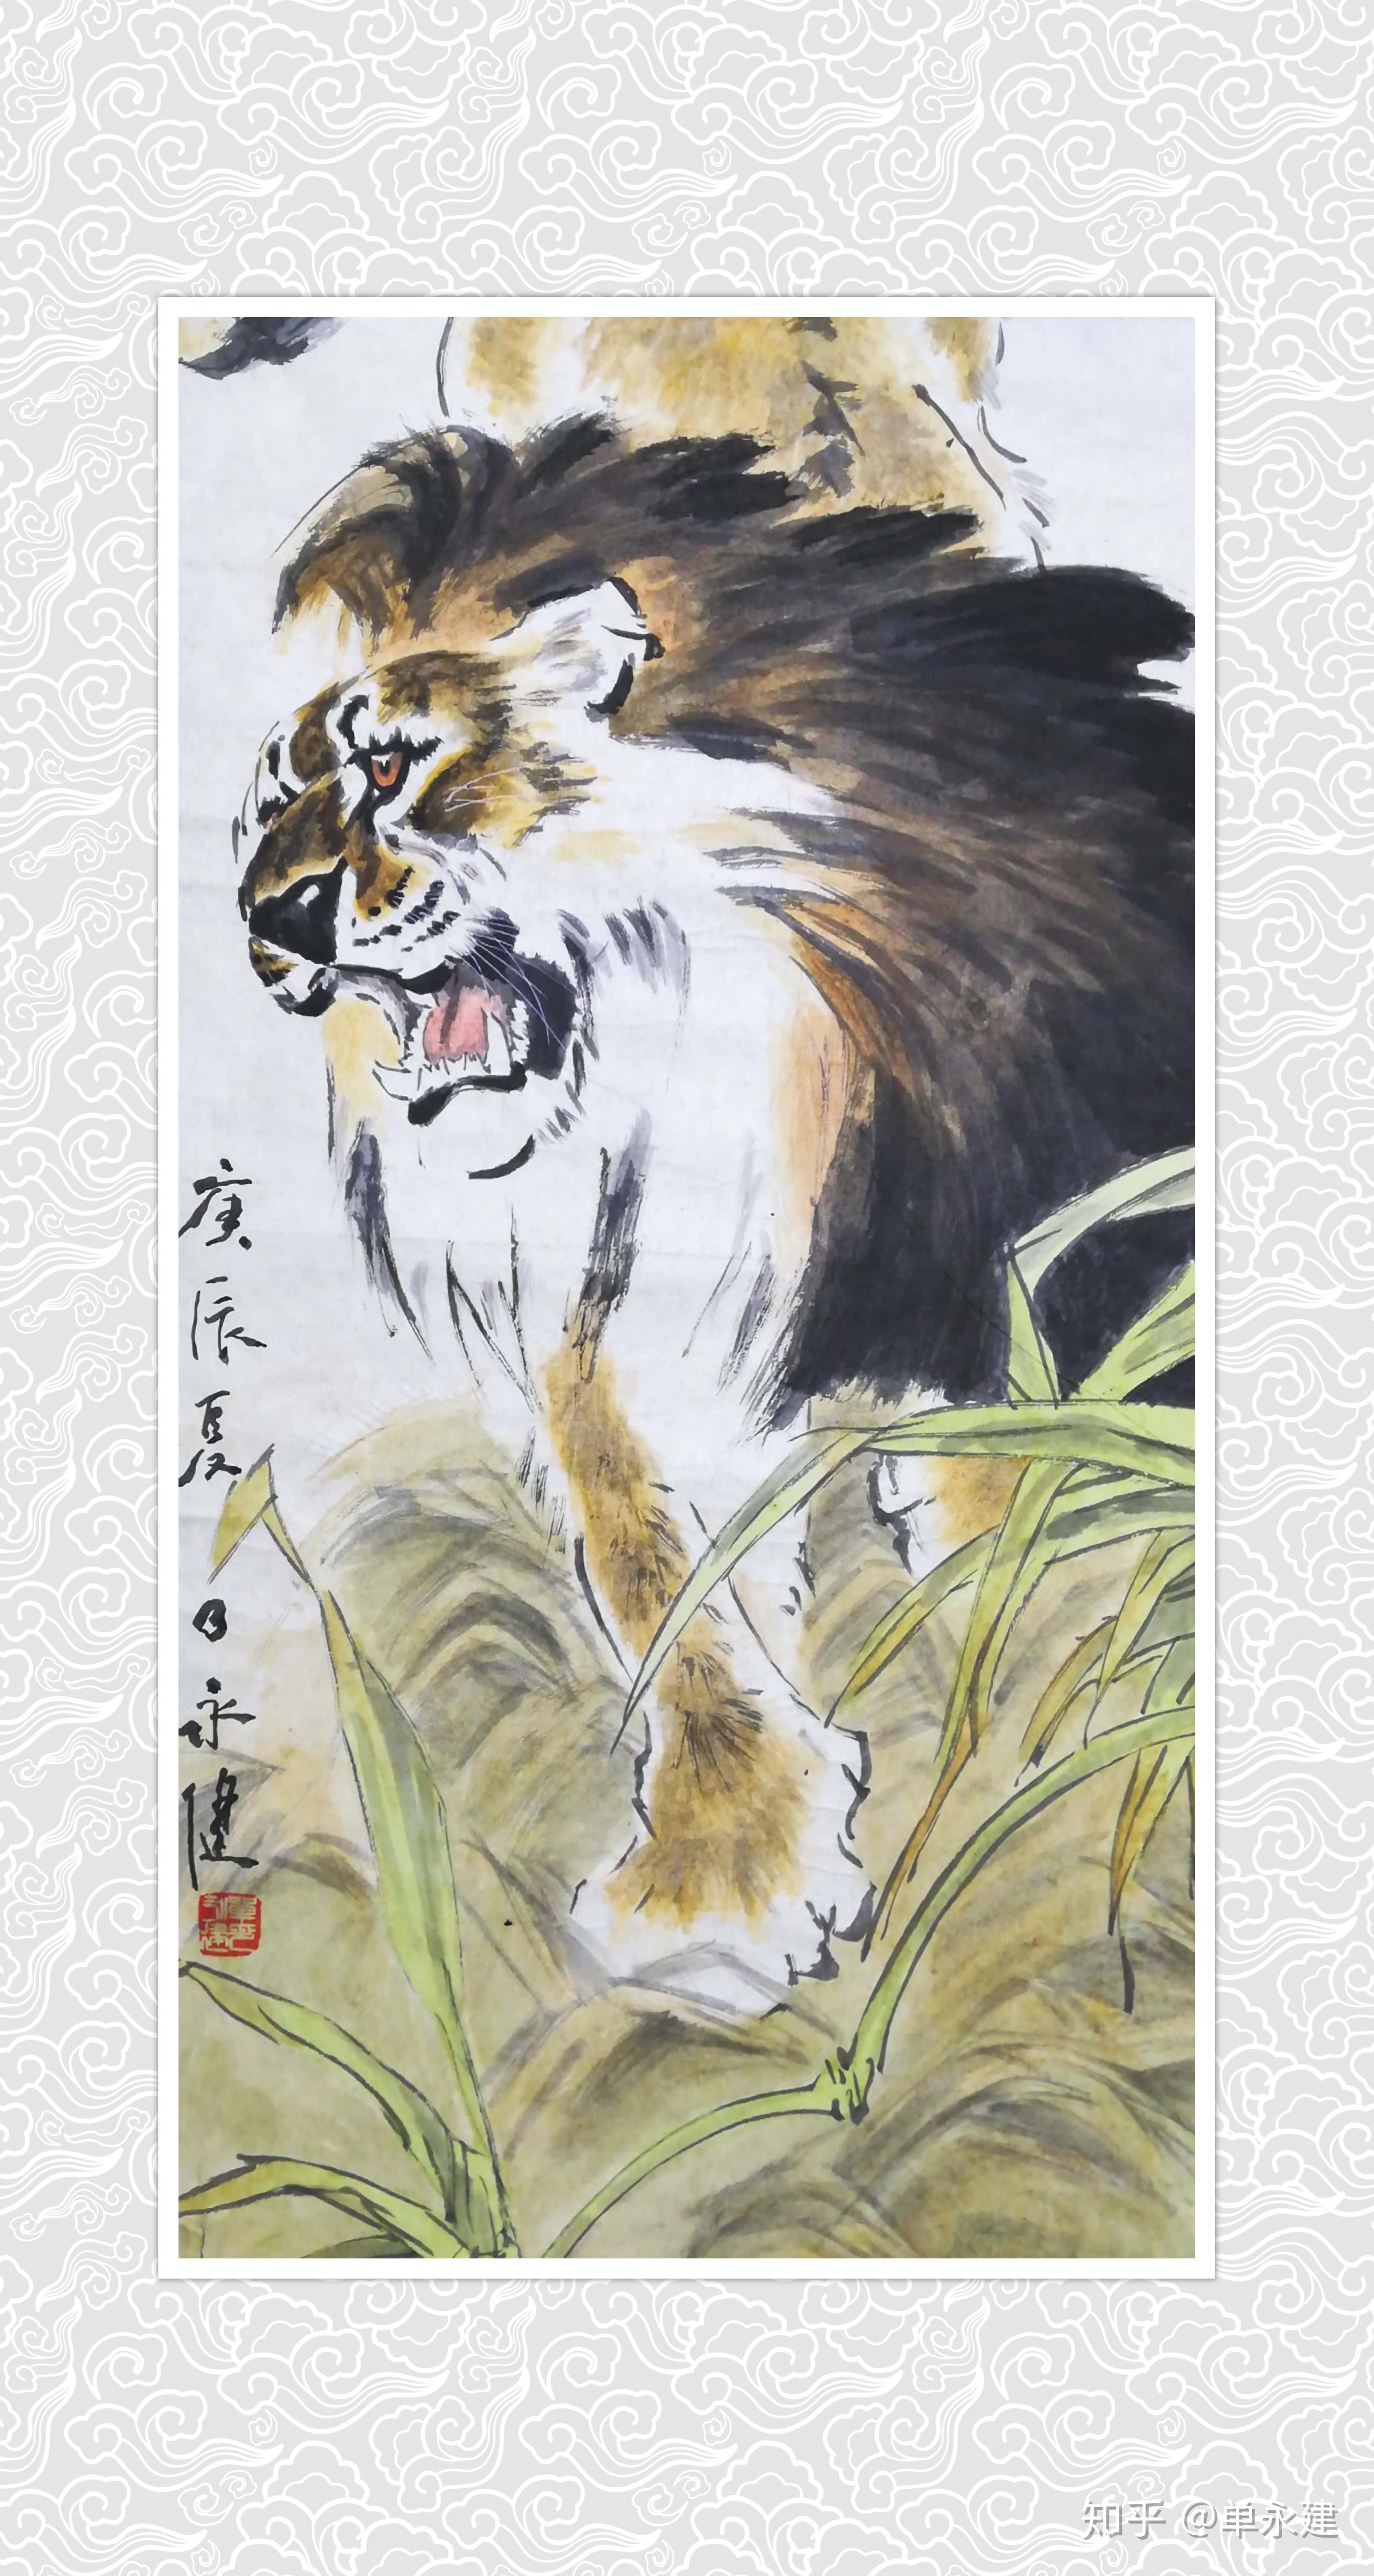 【单永建画作】(2000年)国画临摹刘继卣《狮子》1 